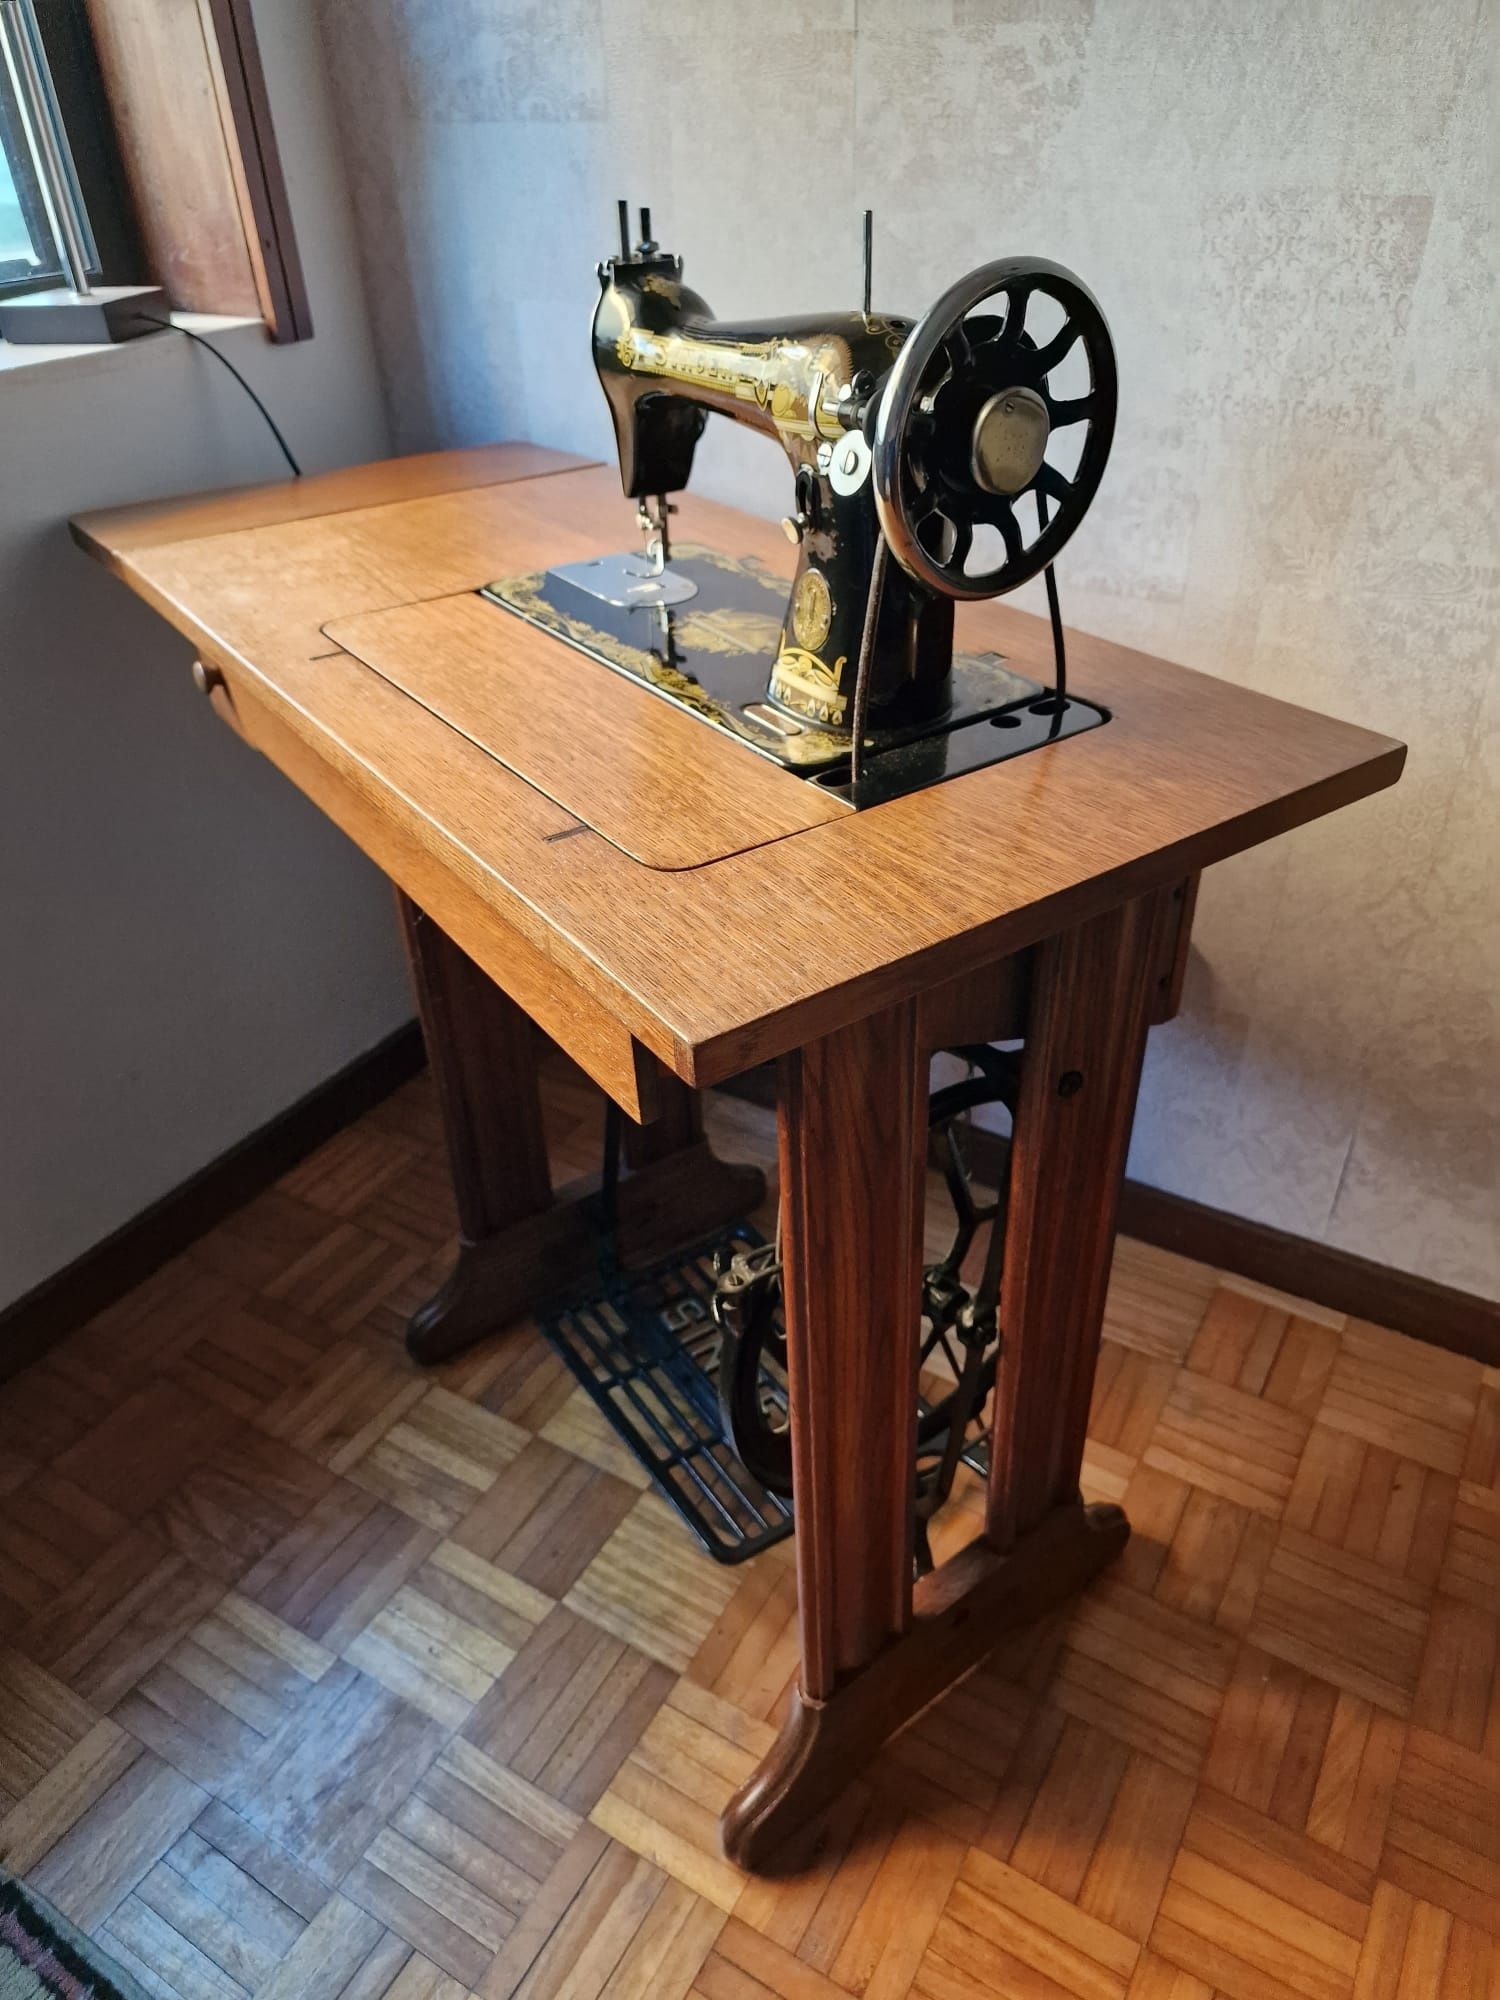 Maquina de costura antiga.